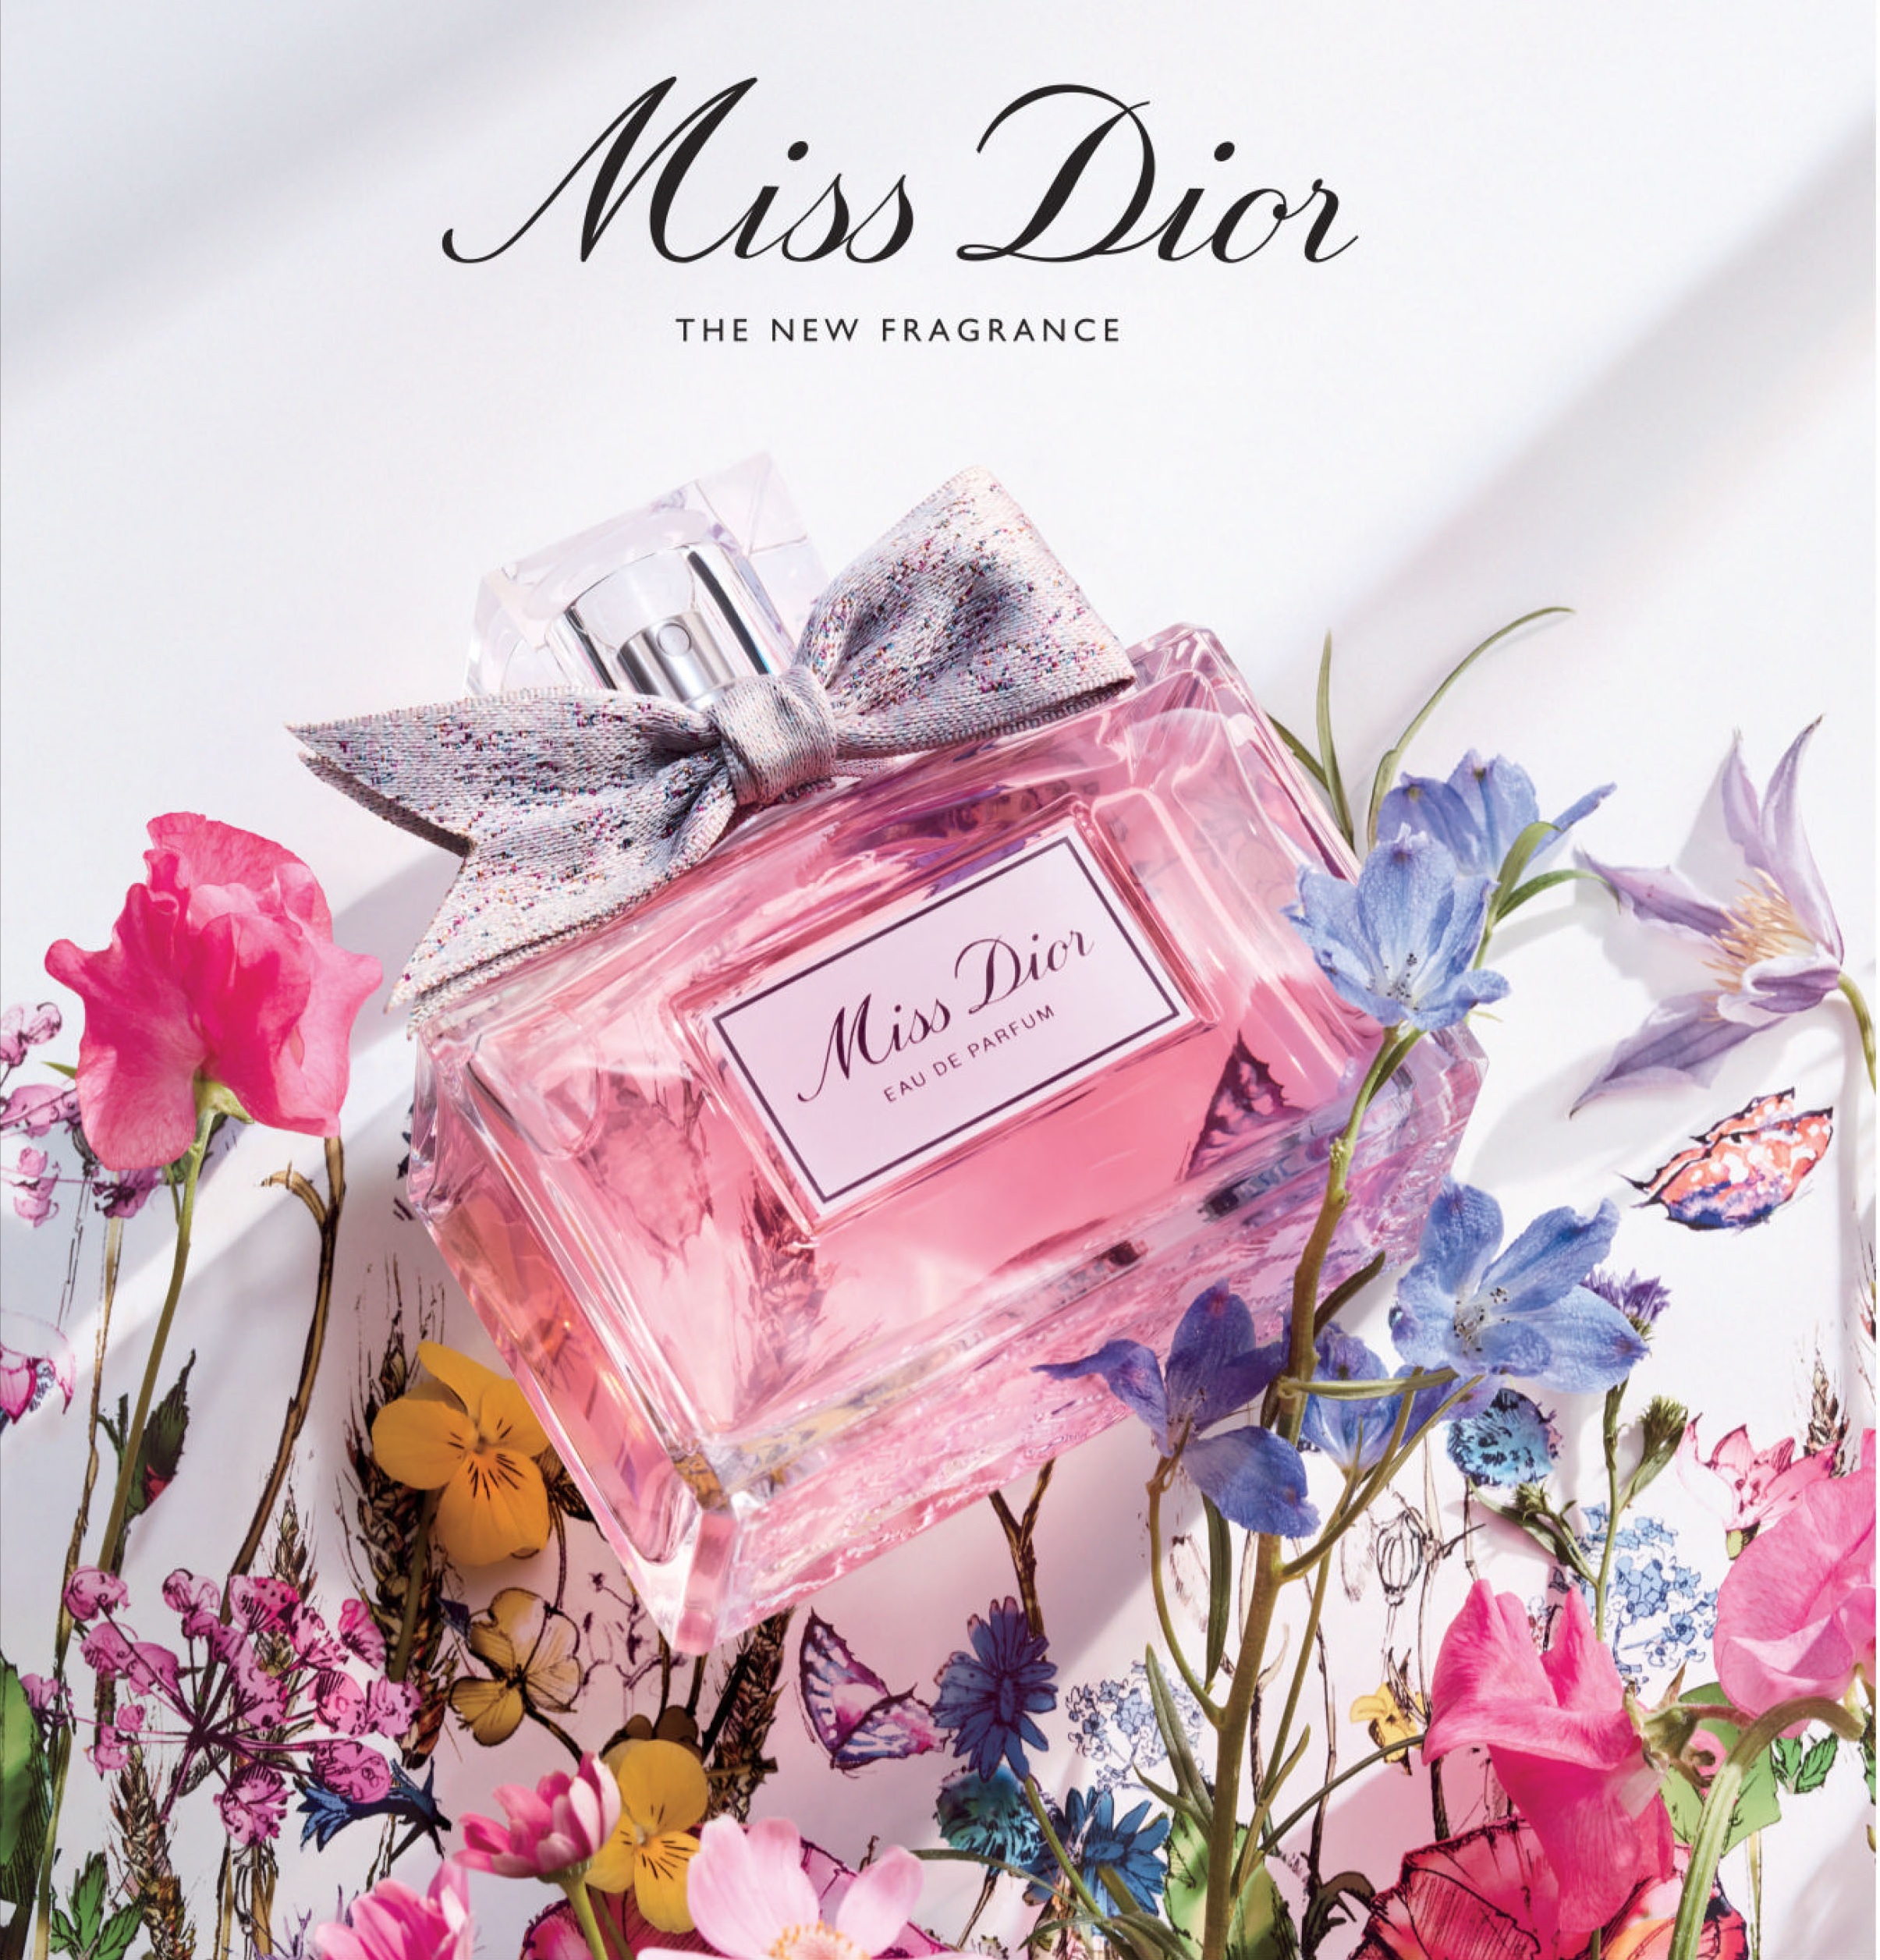 Dior为2021年重塑了Miss Dior Eau de Parfum 新香水